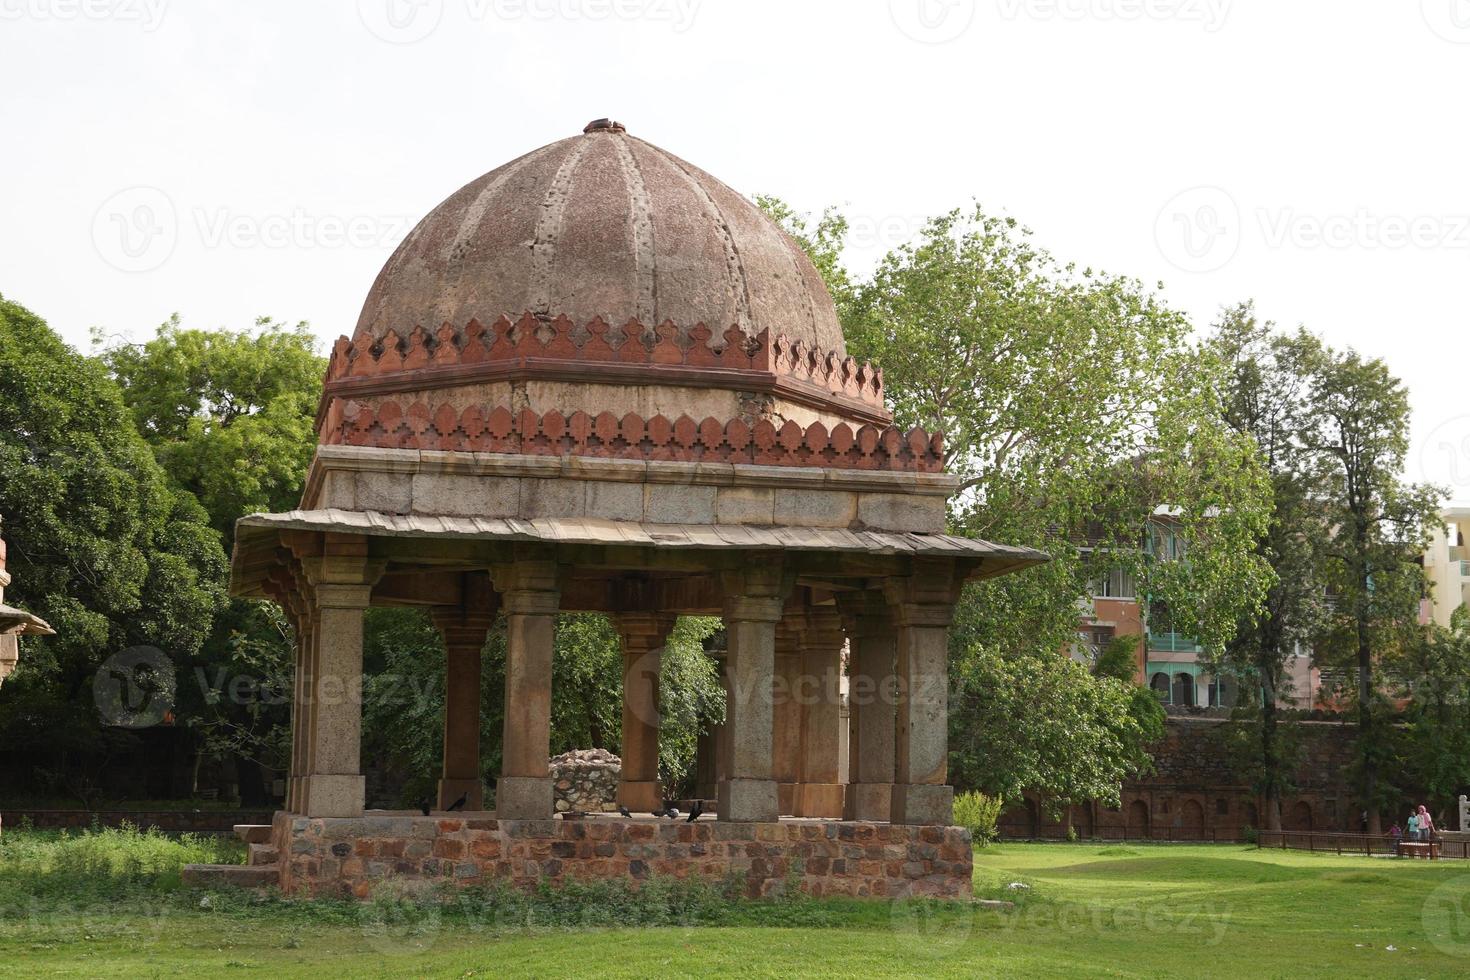 tombes tughluq sous-continent indien structures monotones et lourdes à l'architecture indo-islamique construites pendant la dynastie tughlaq photo